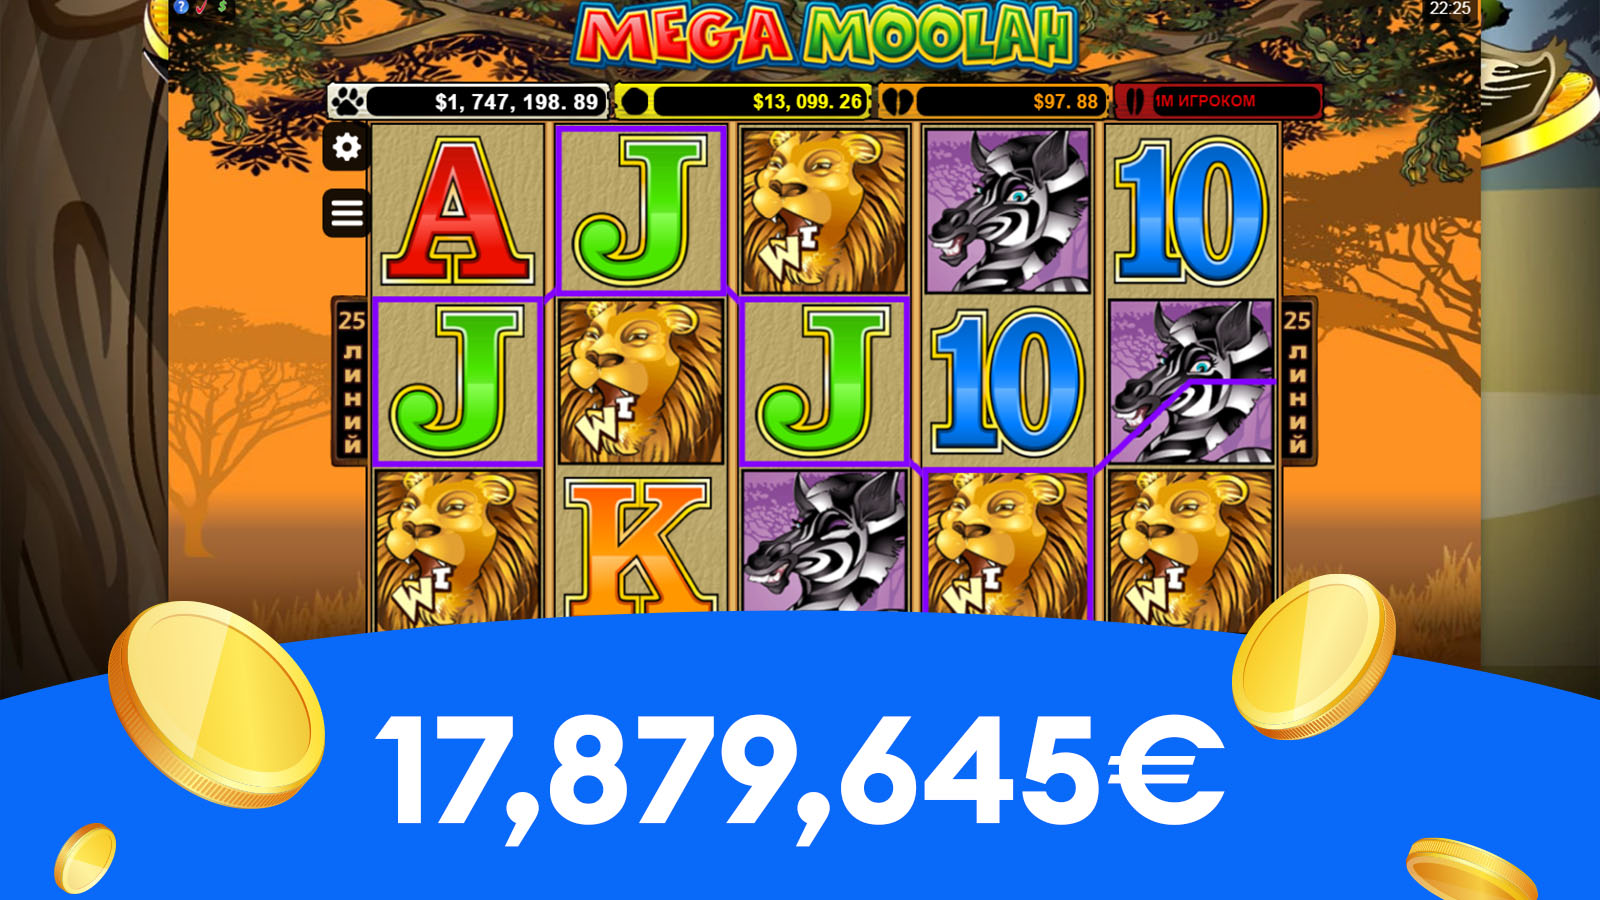 17,879,645€ la Mega Moolah